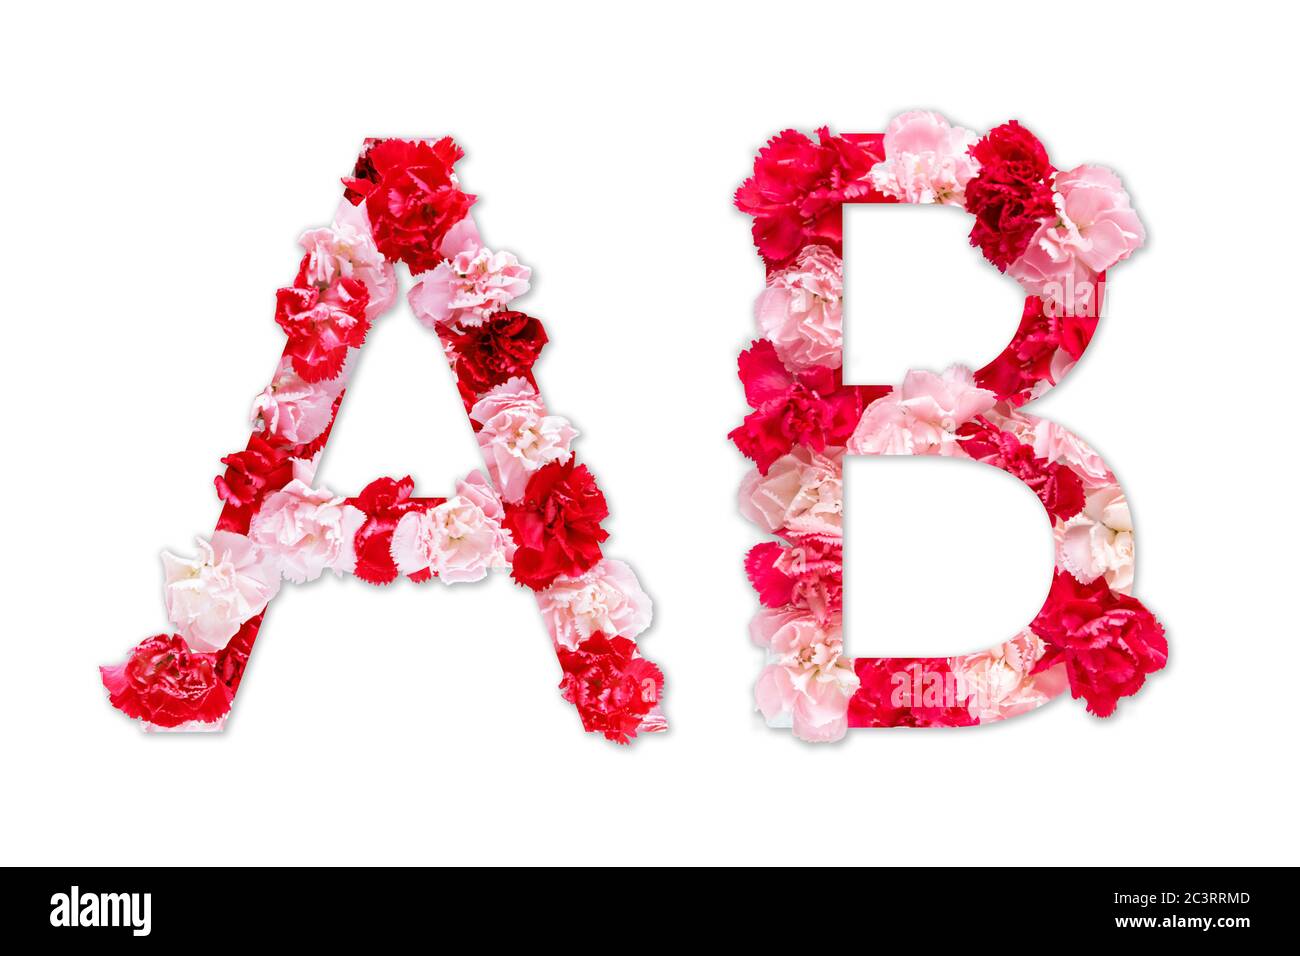 Police de fleurs alphabet A B ensemble (collection A-Z), fait de vraies fleurs de Carnation rose, rouge avec papier coupé en forme de lettre majuscule. Police florale Banque D'Images